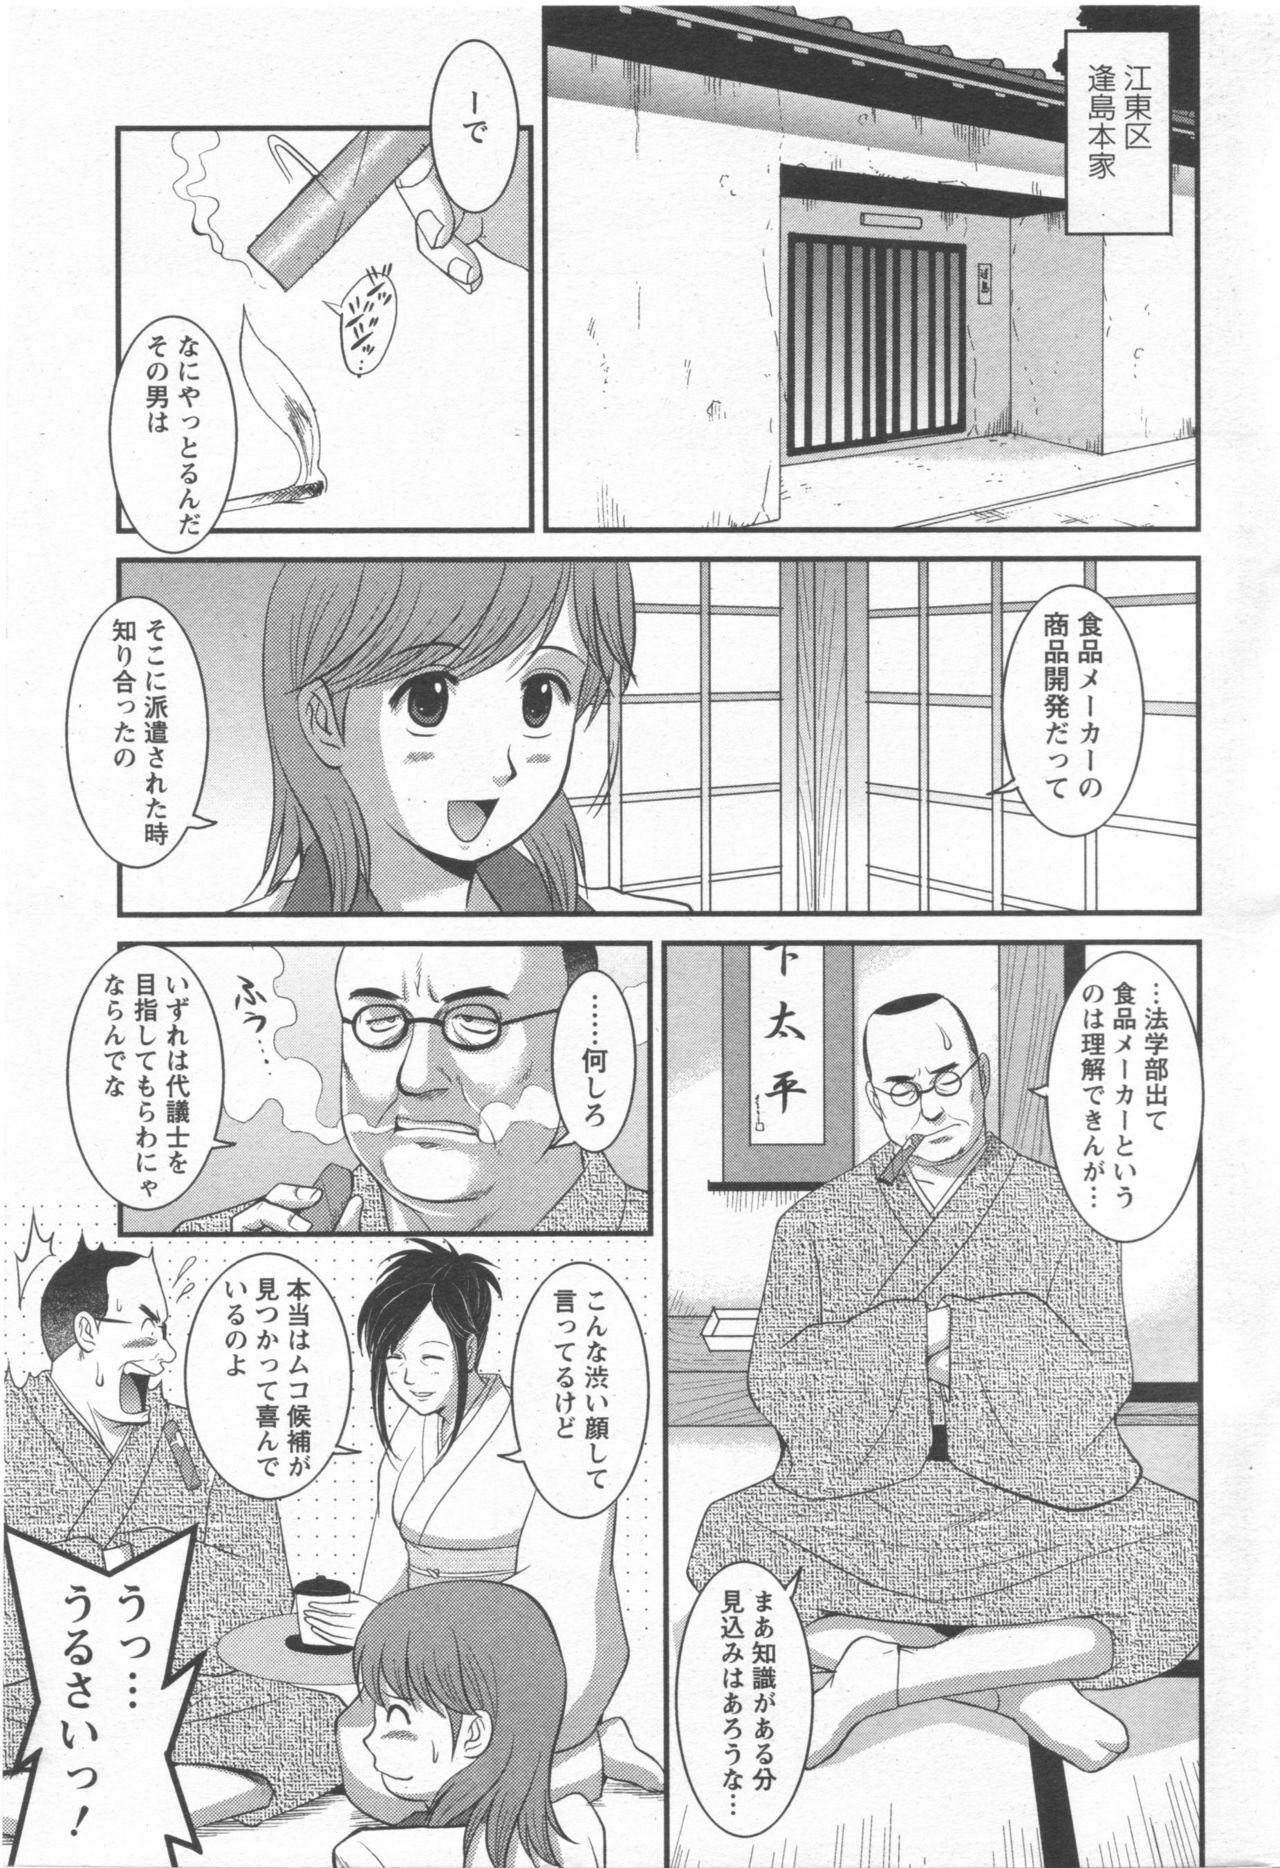 Haken no Muuko-san 10 [Saigado] page 6 full